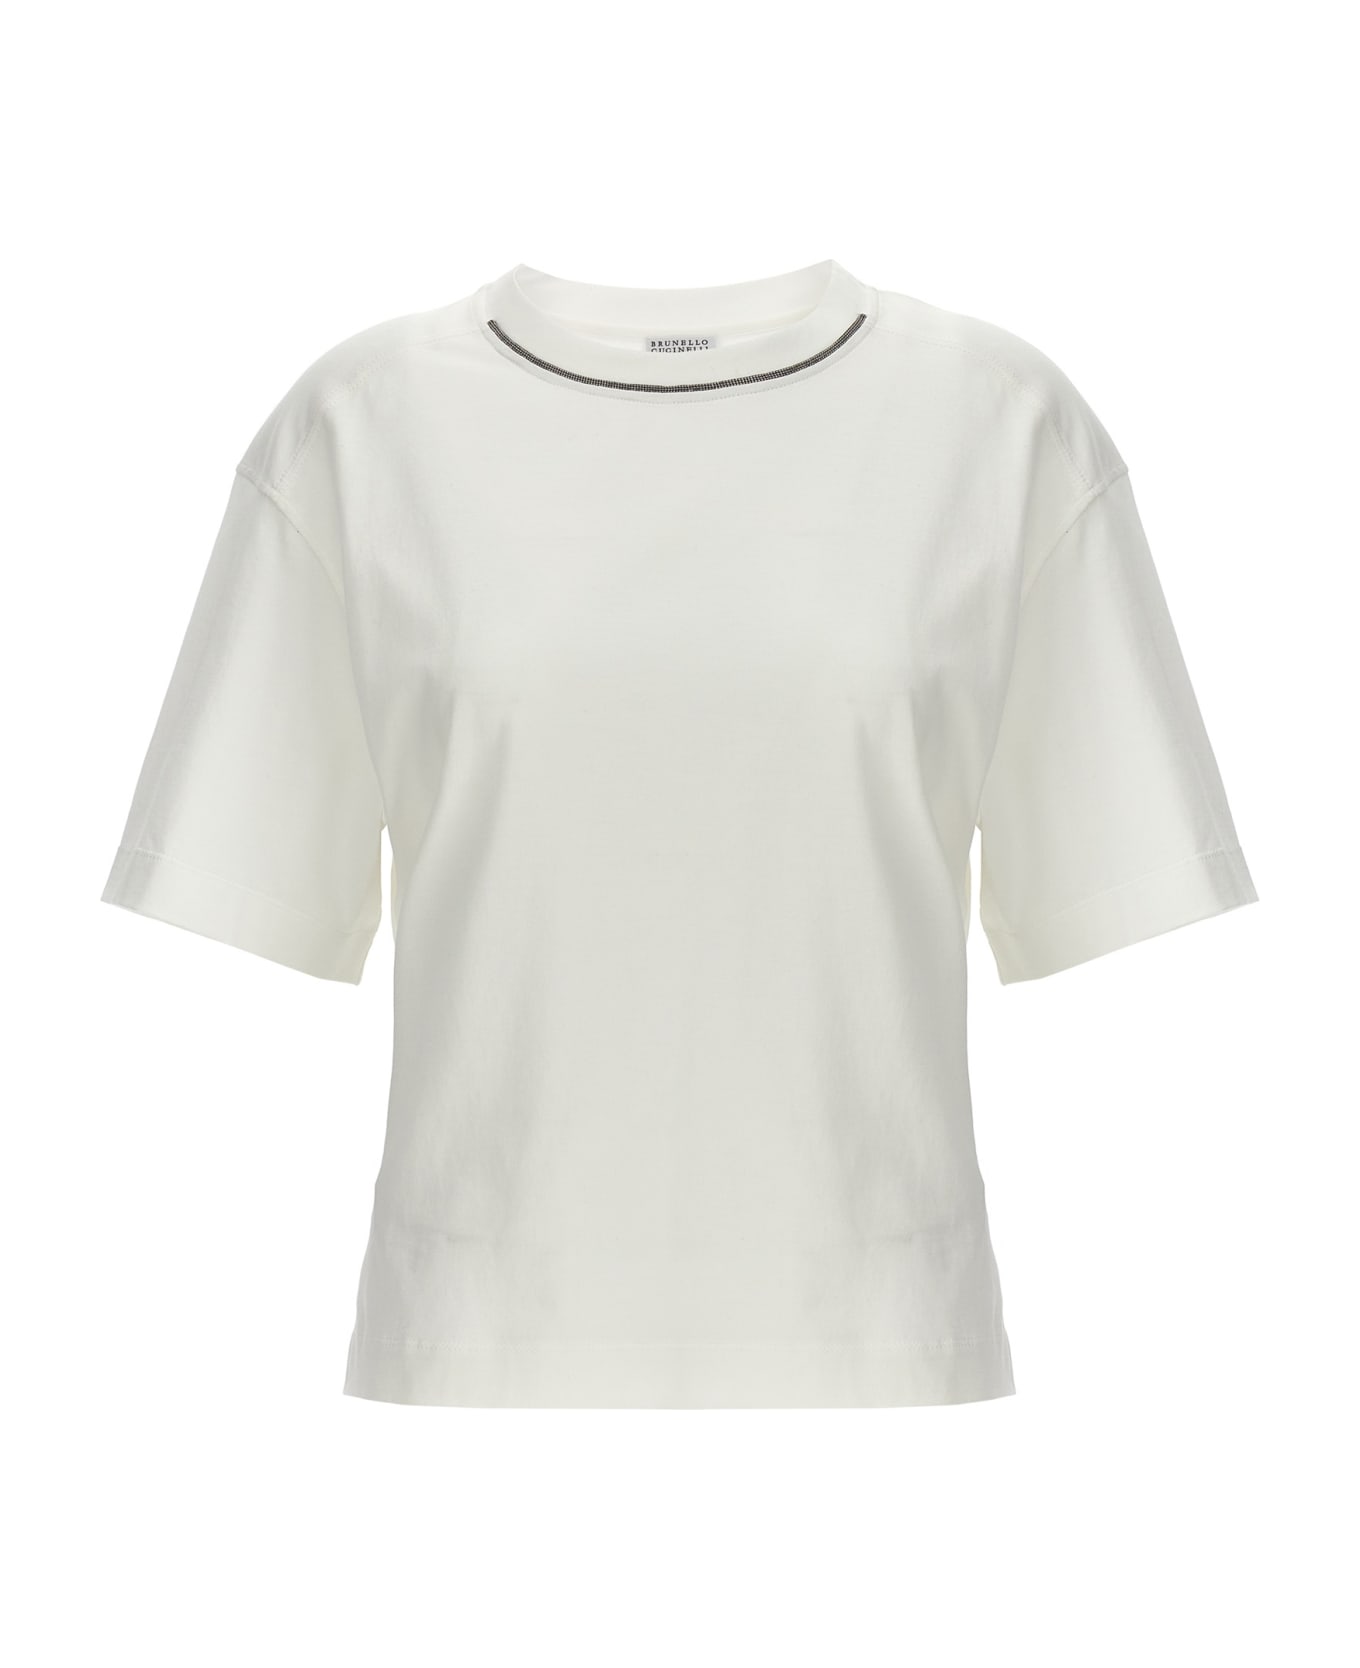 Brunello Cucinelli Round Neck Pullover - White Tシャツ